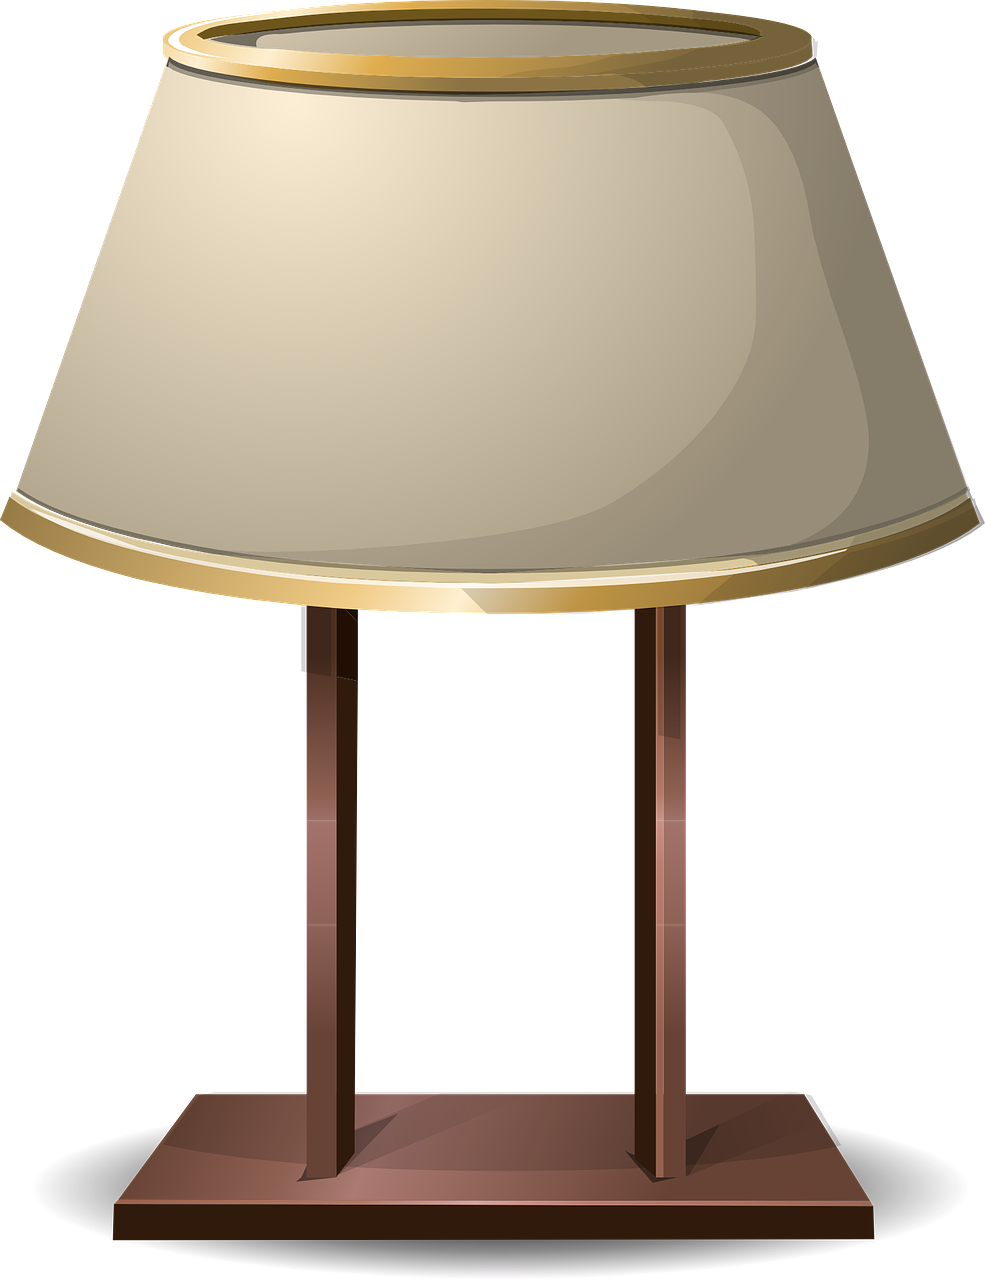 lamp desk lamp lampshade free photo